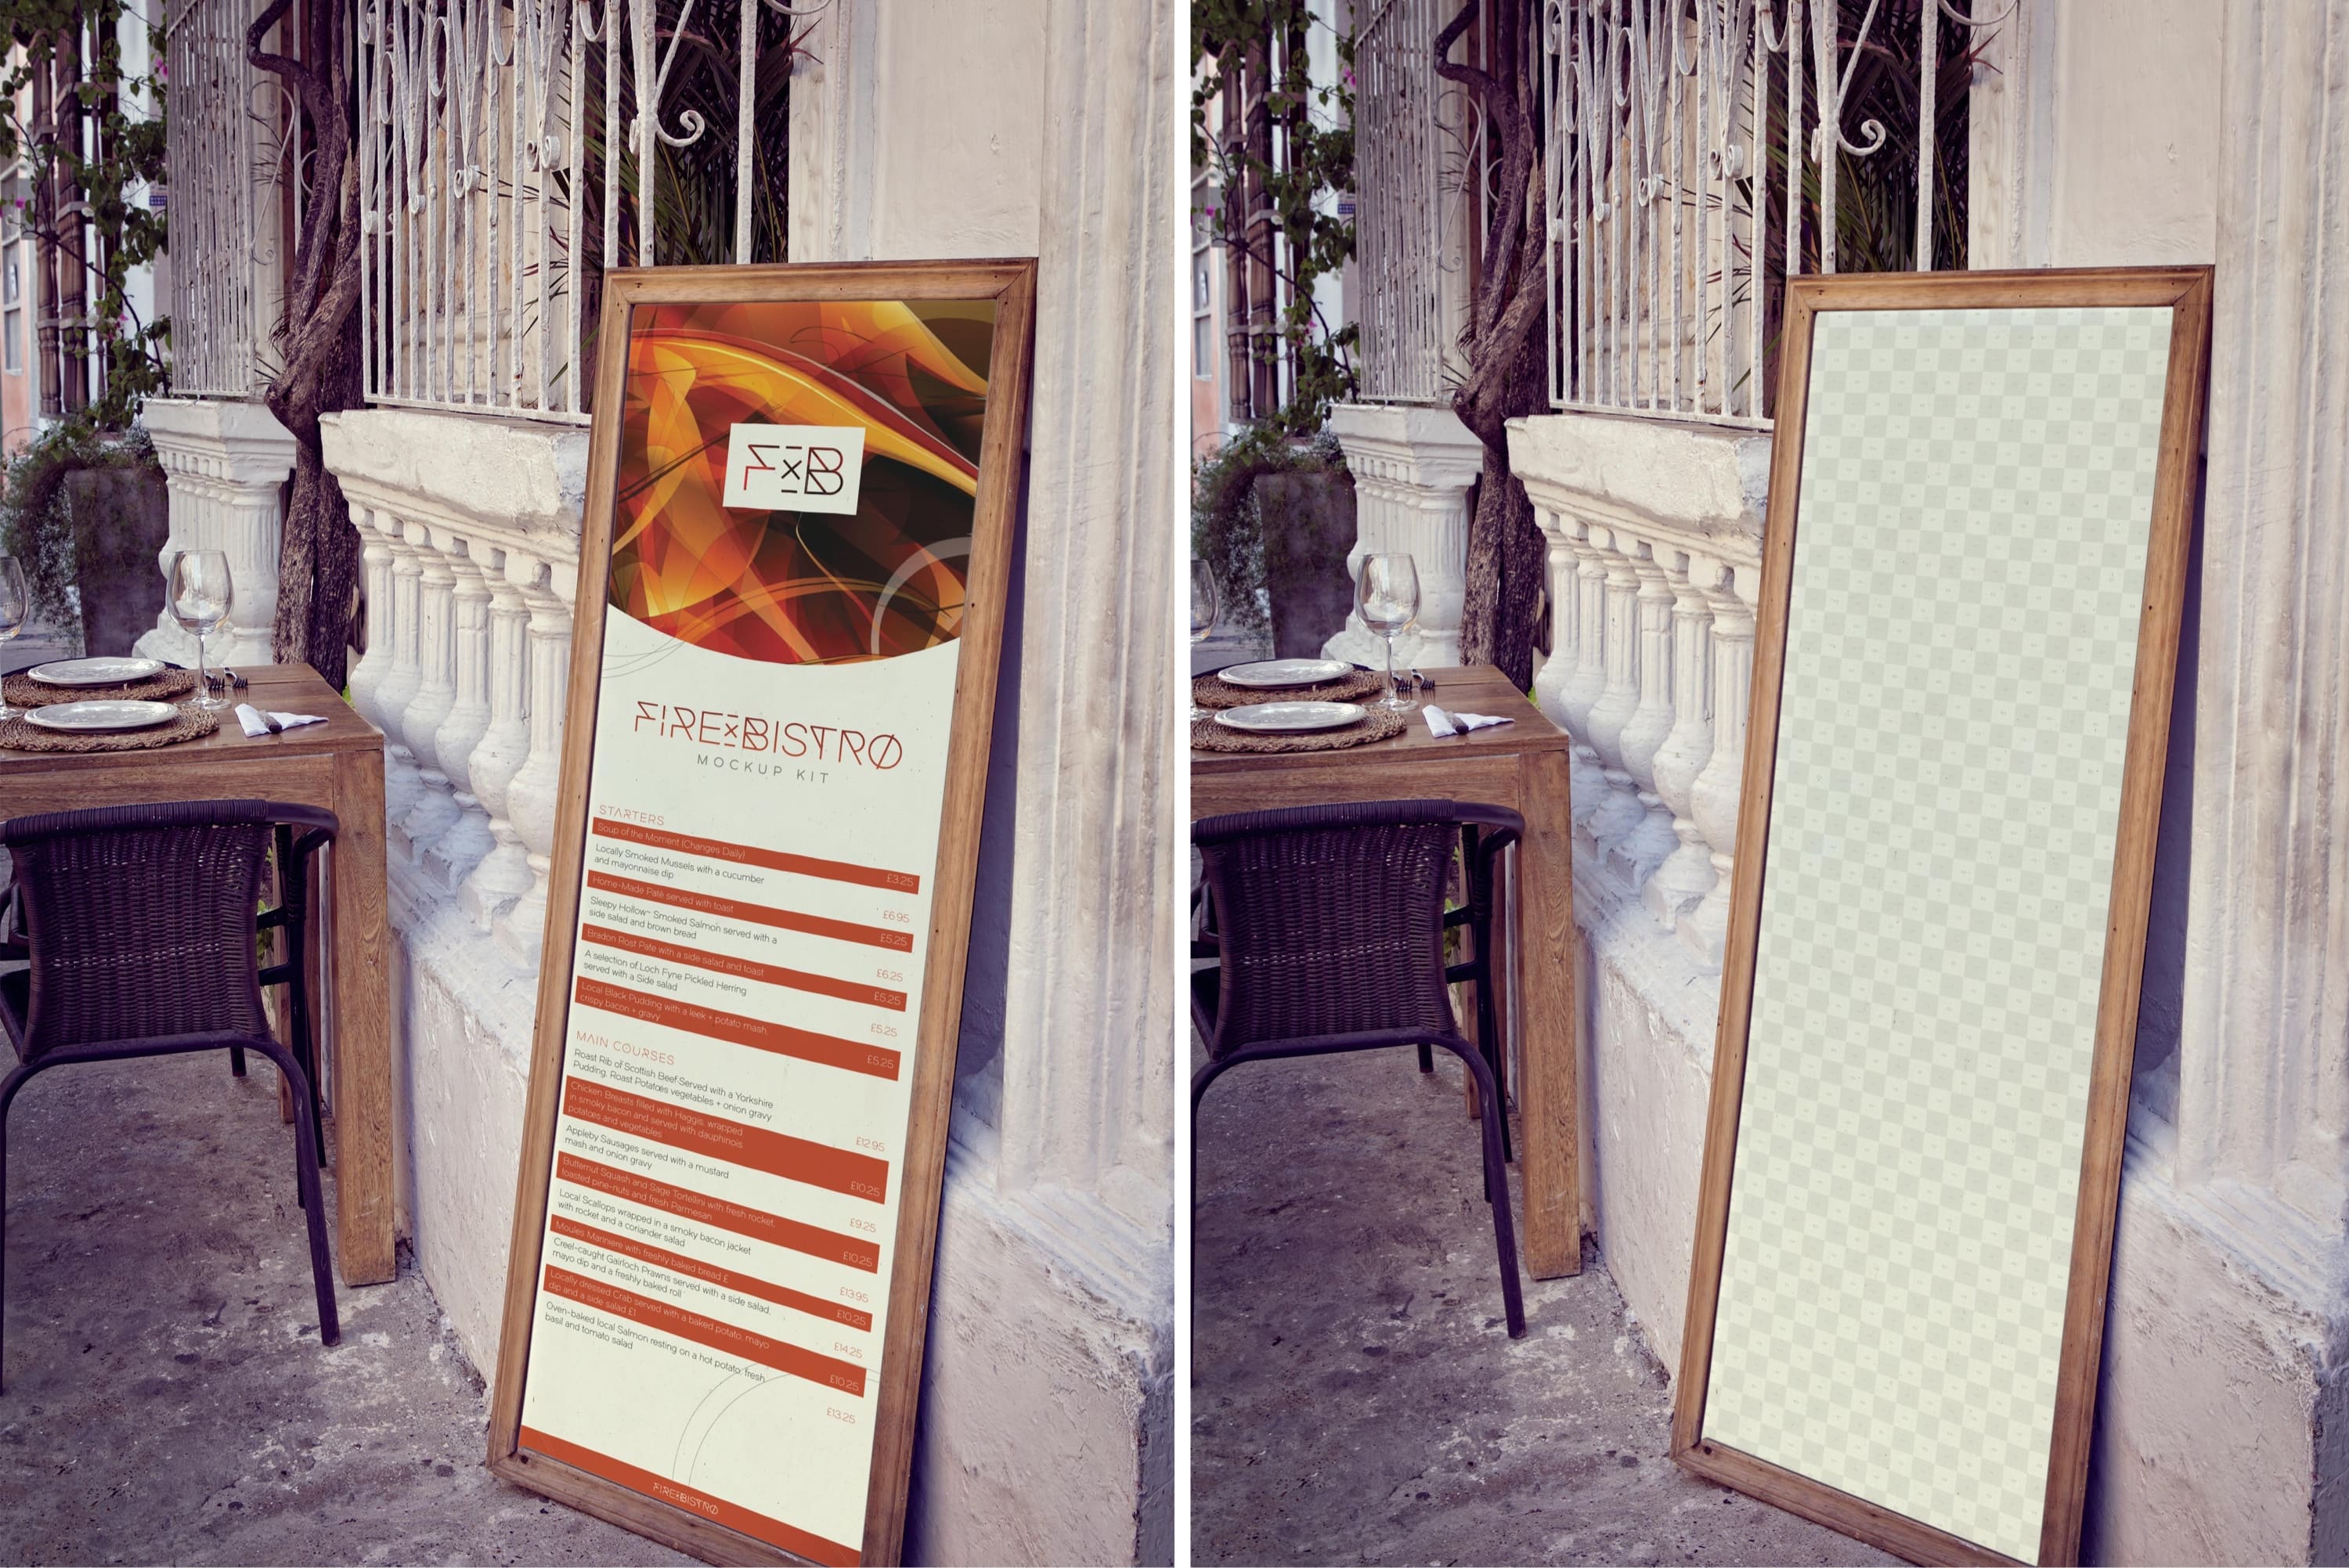 店铺活动海报设计图片预览样机模板 Vertical Display Board Mockup插图